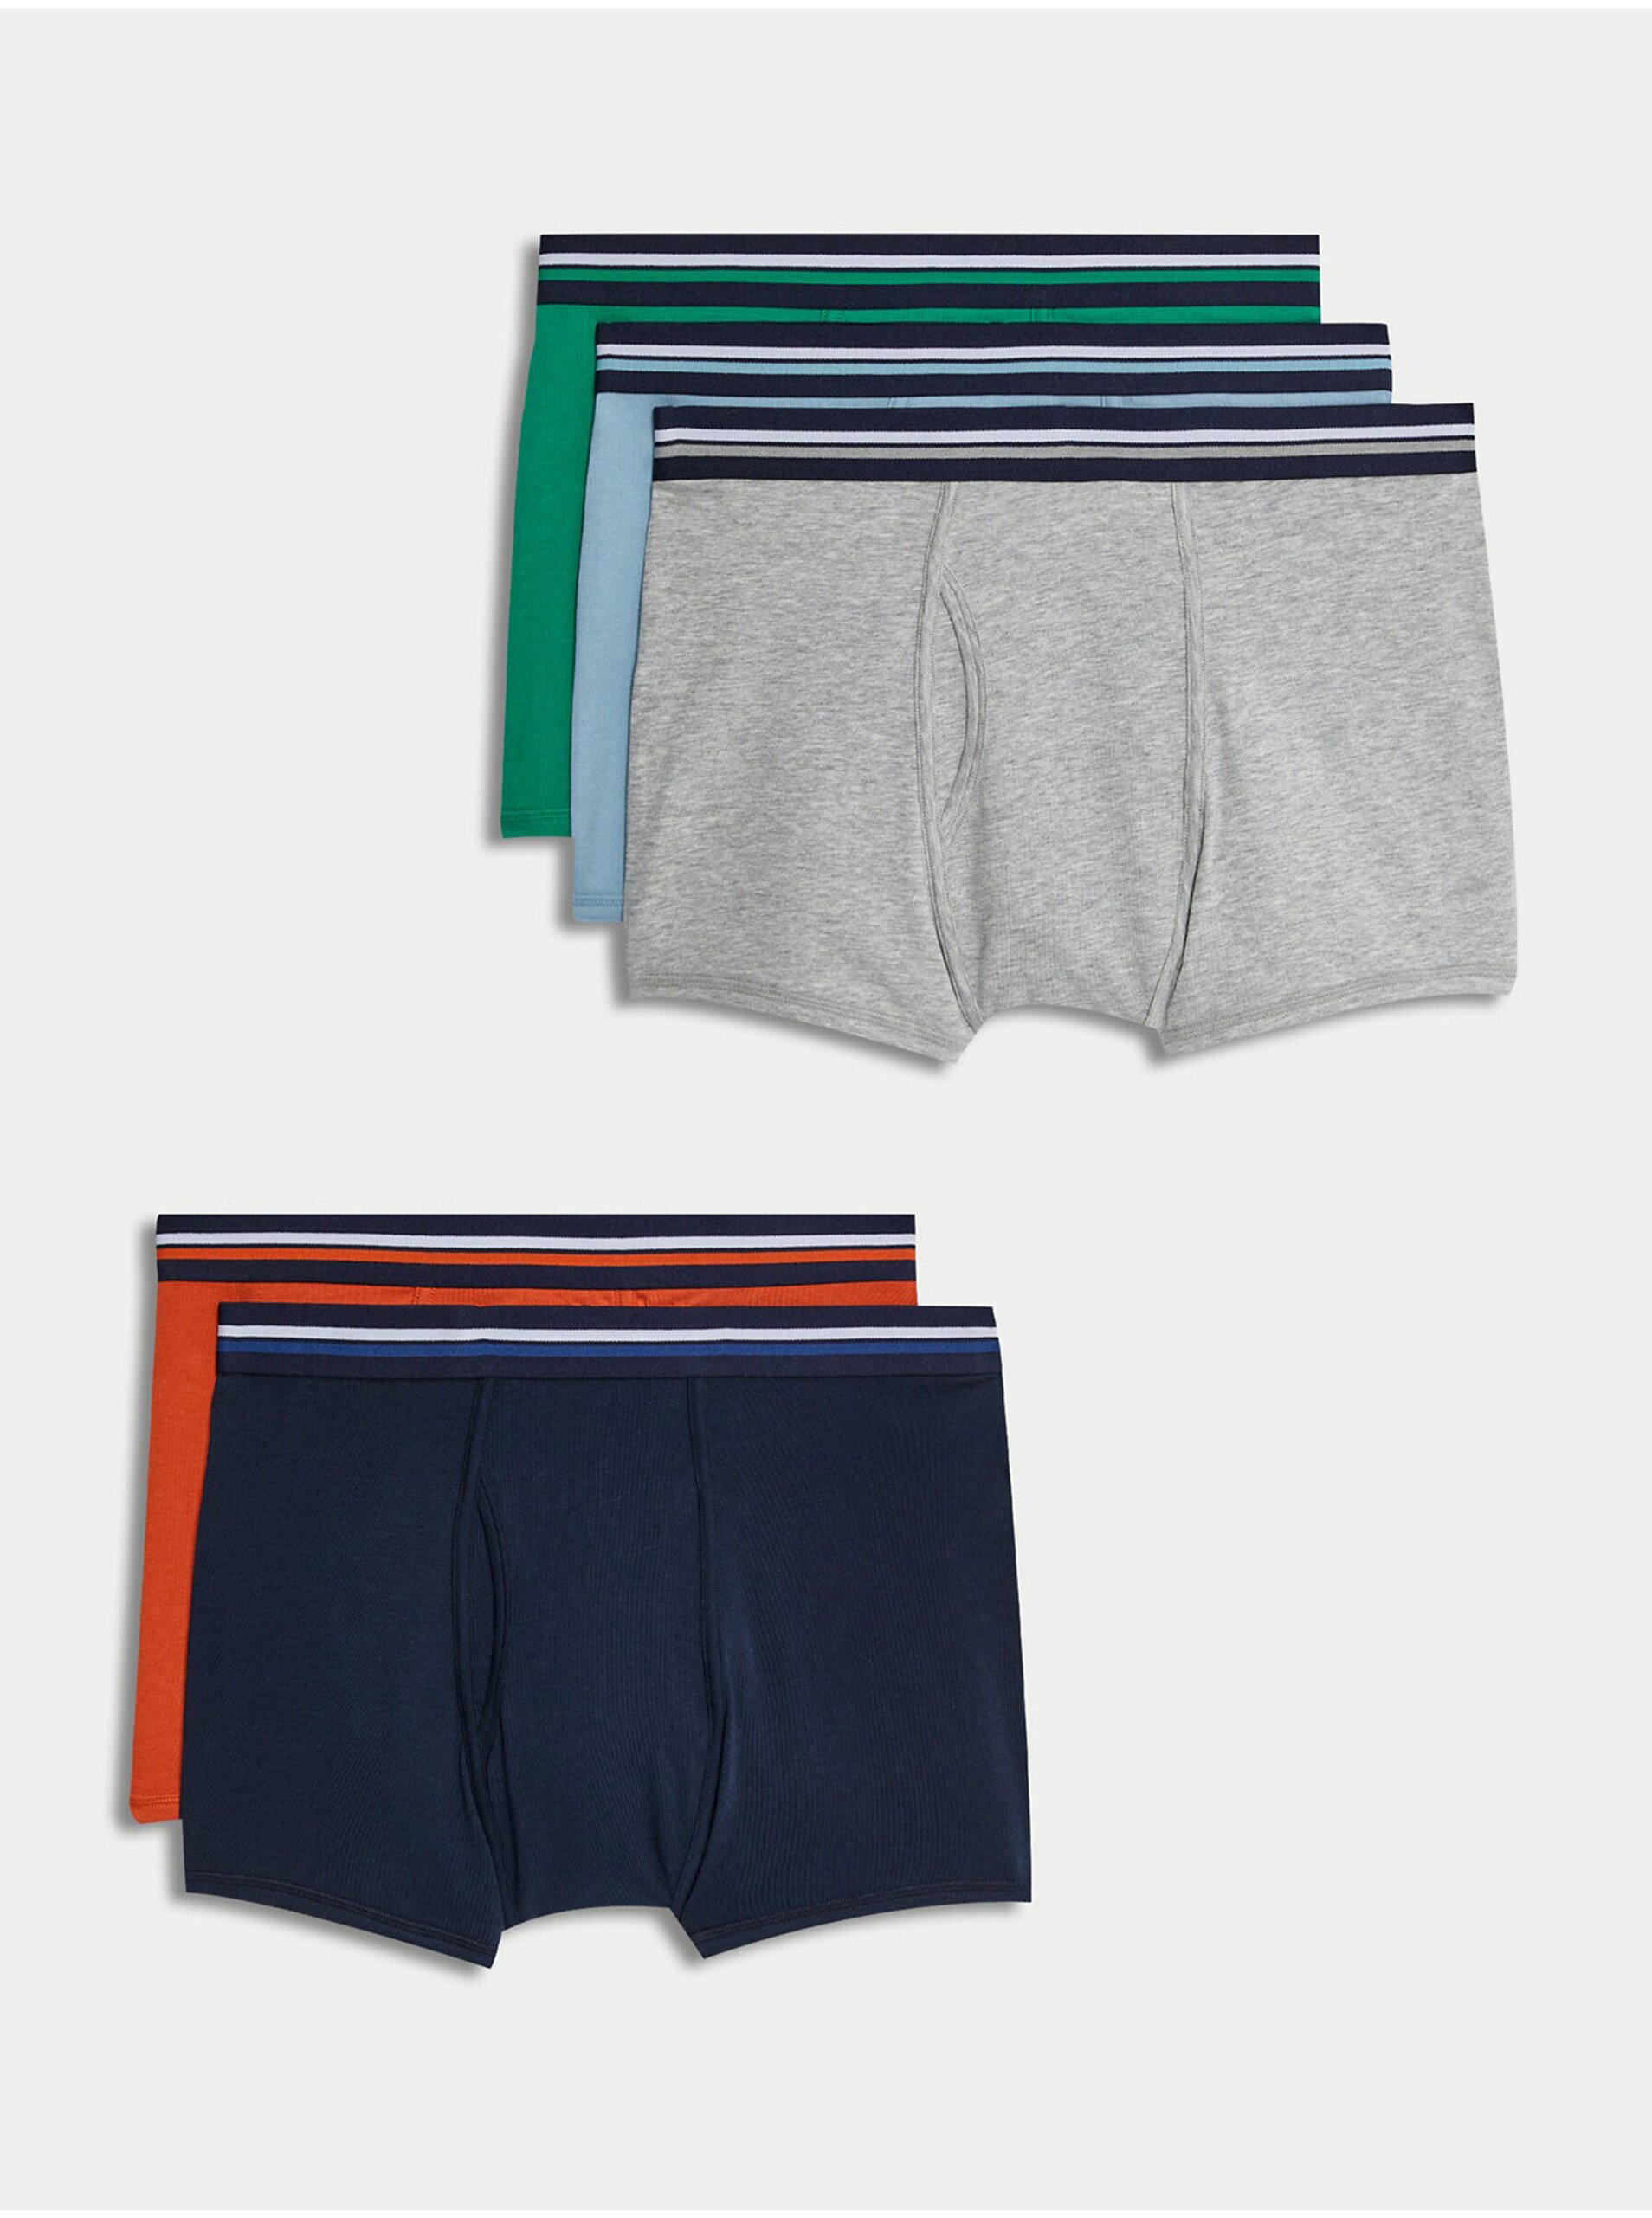 Lacno Súprava piatich pánskych boxeriek v modrej, zelenej a červenej farbe Marks & Spencer Cool & Fresh™